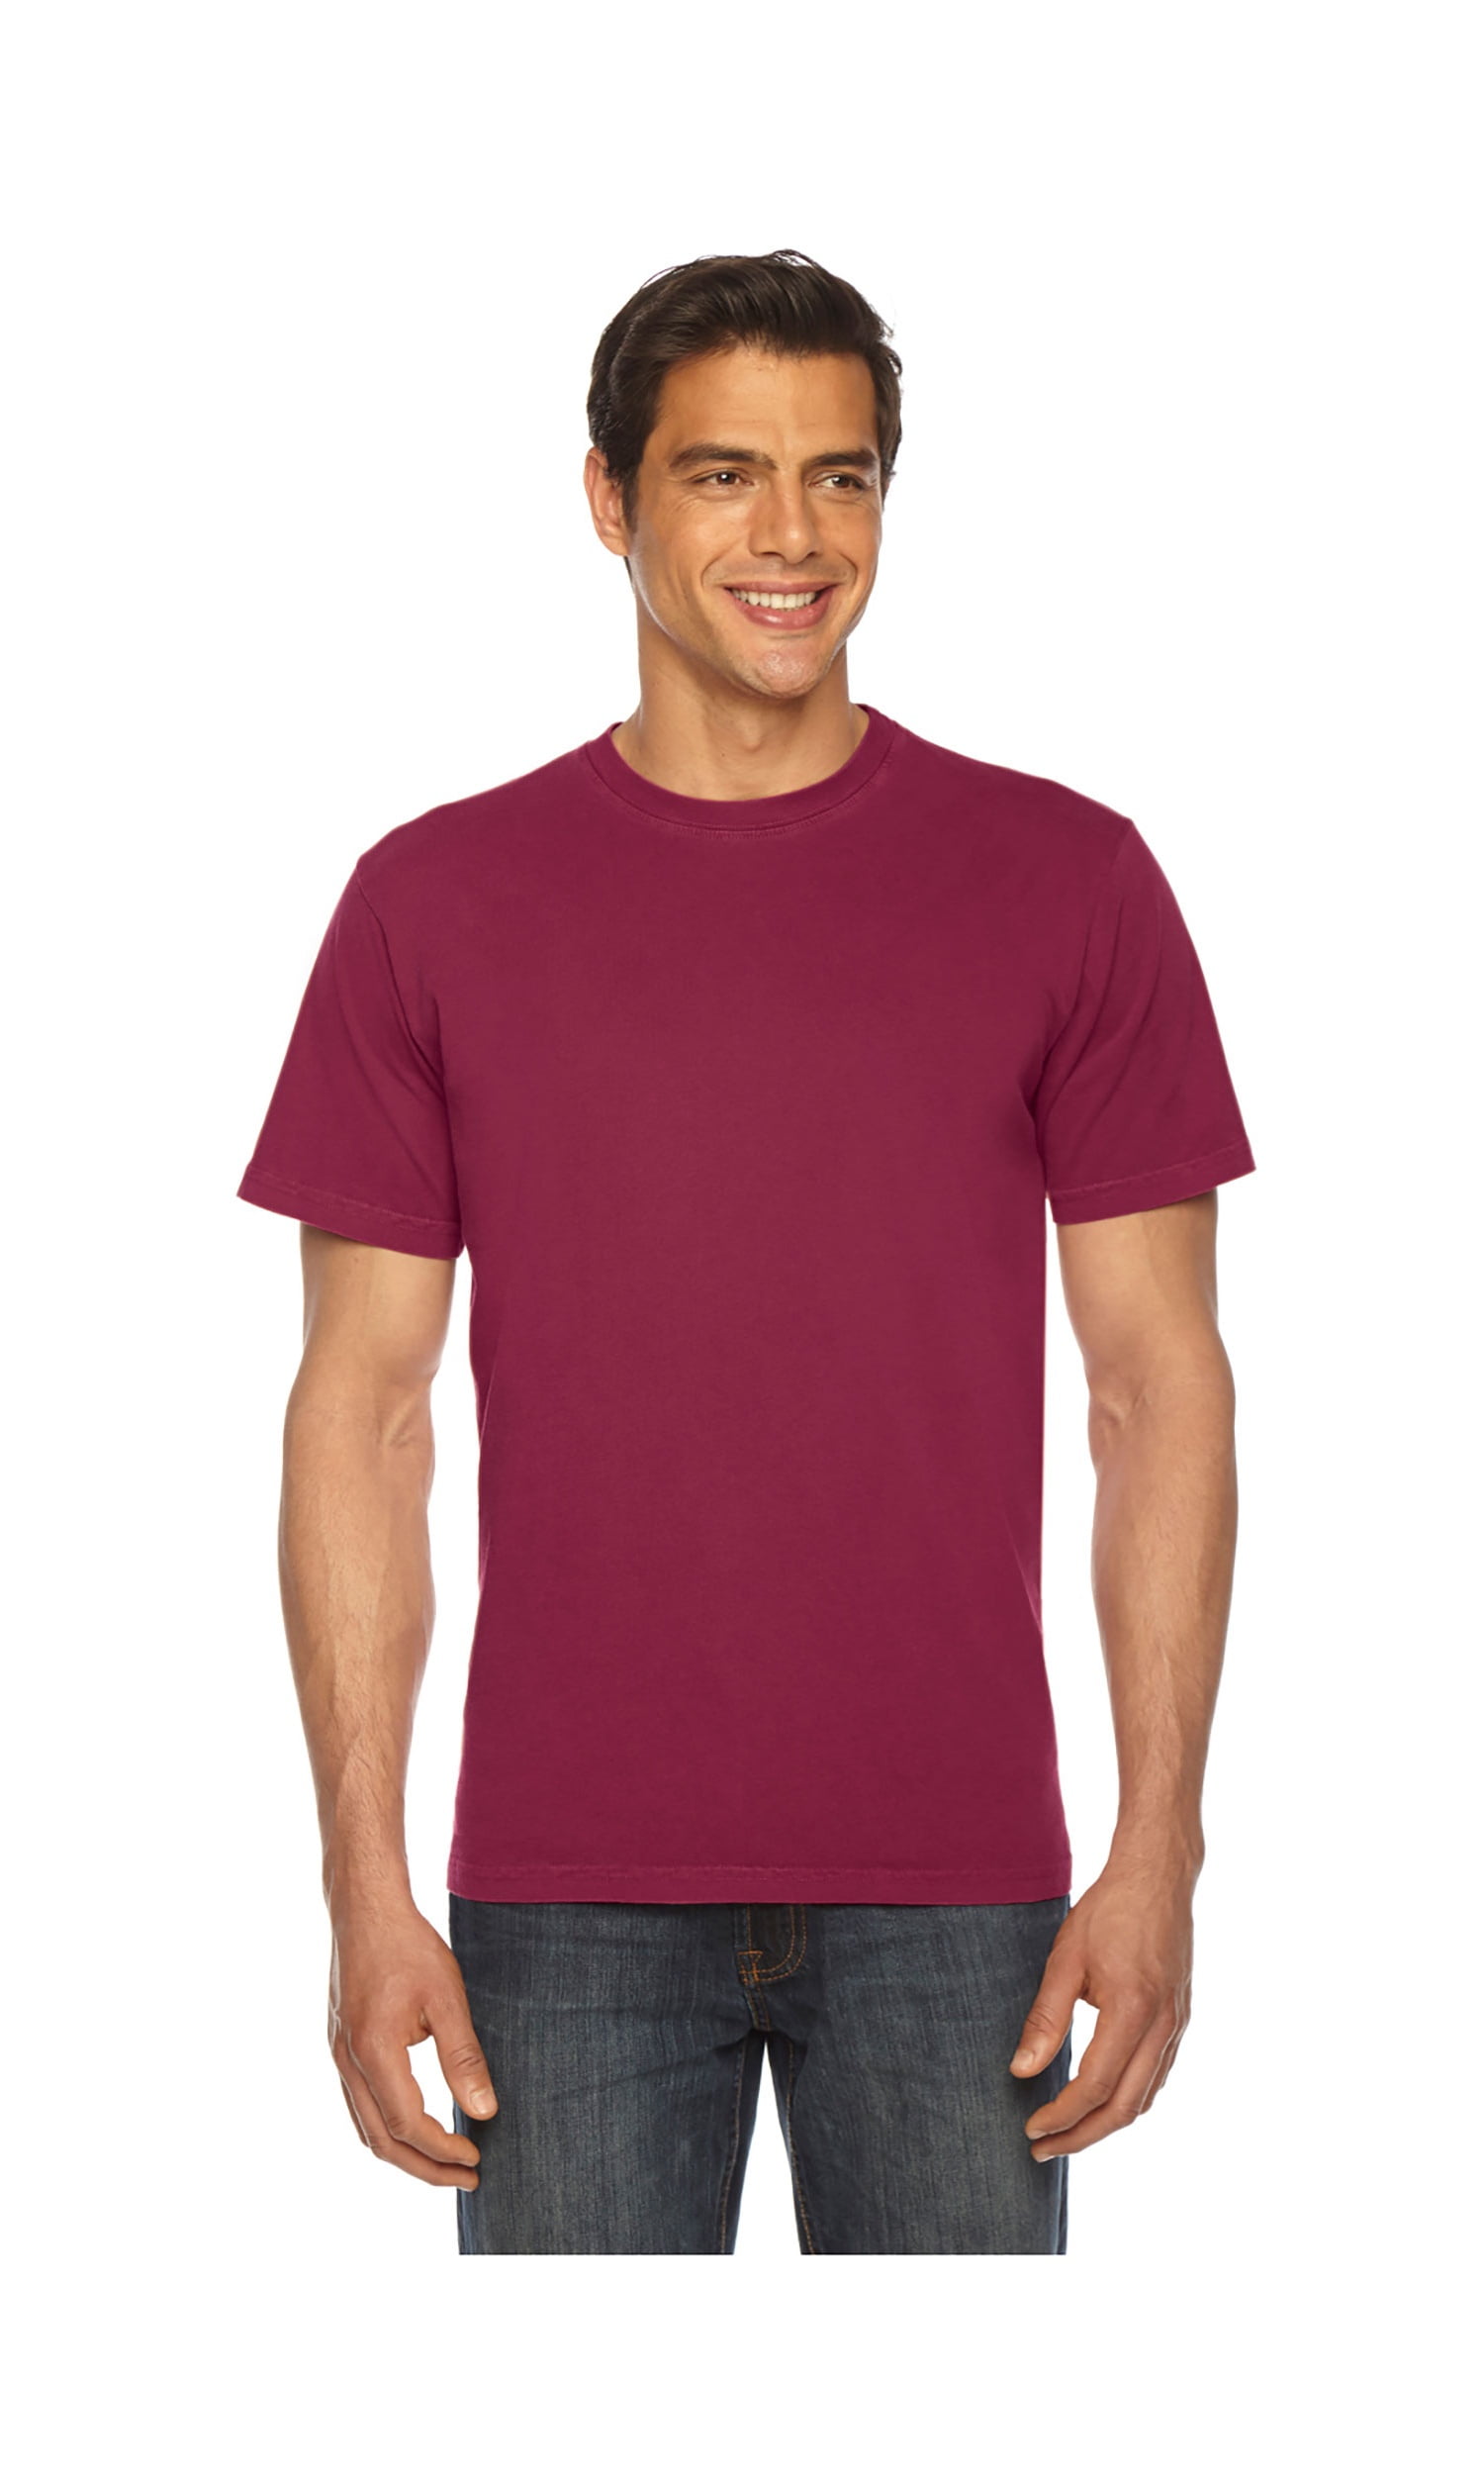 Authentic Pigment Men's Xtrafine T-Shirt, Style AP200 - Walmart.com